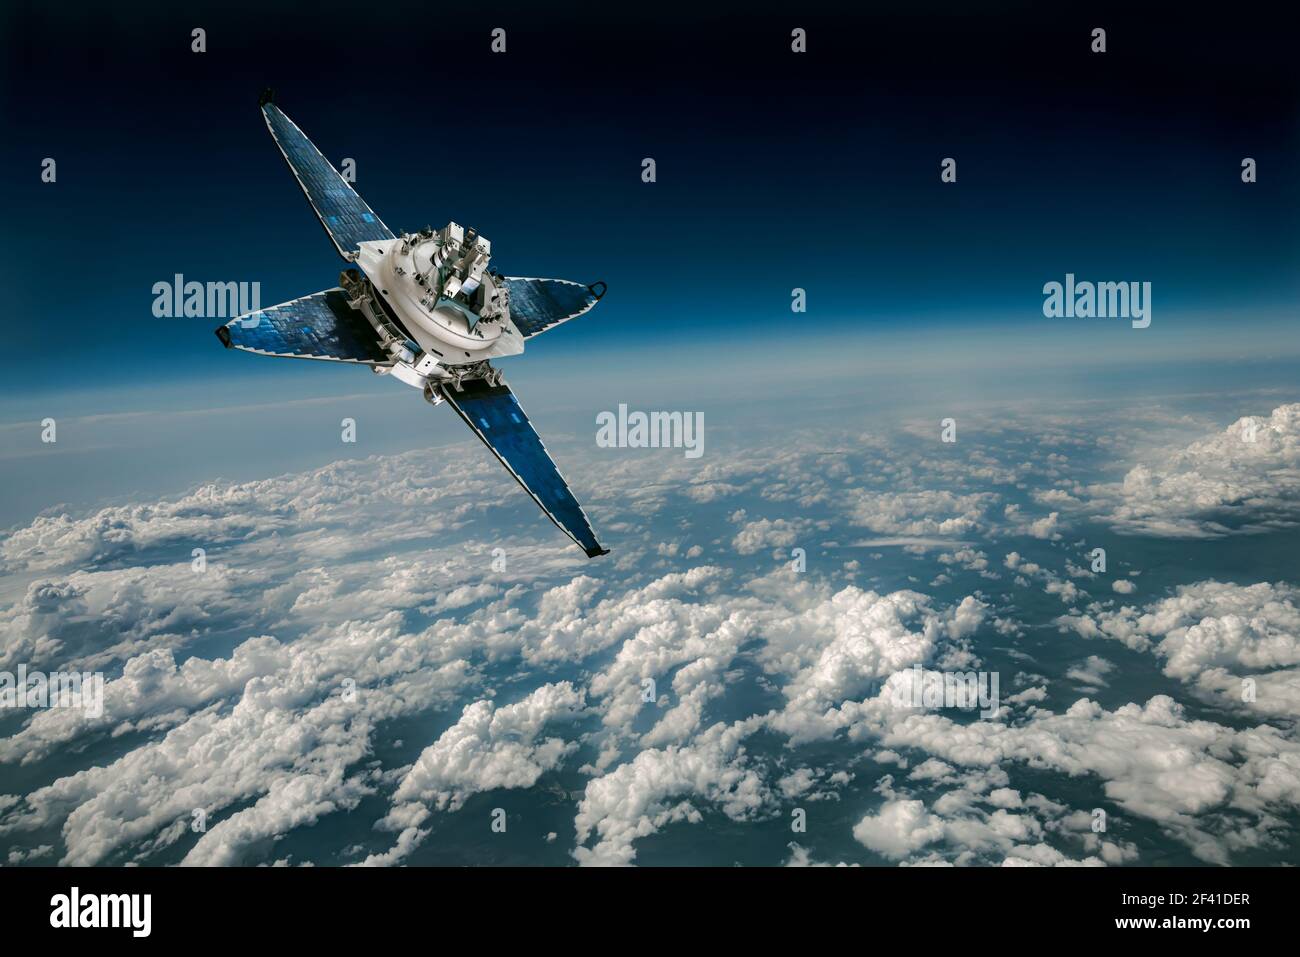 Raum-Satelliten die Erde umkreisen. Elemente des Bildes von der NASA eingerichtet. Stockfoto